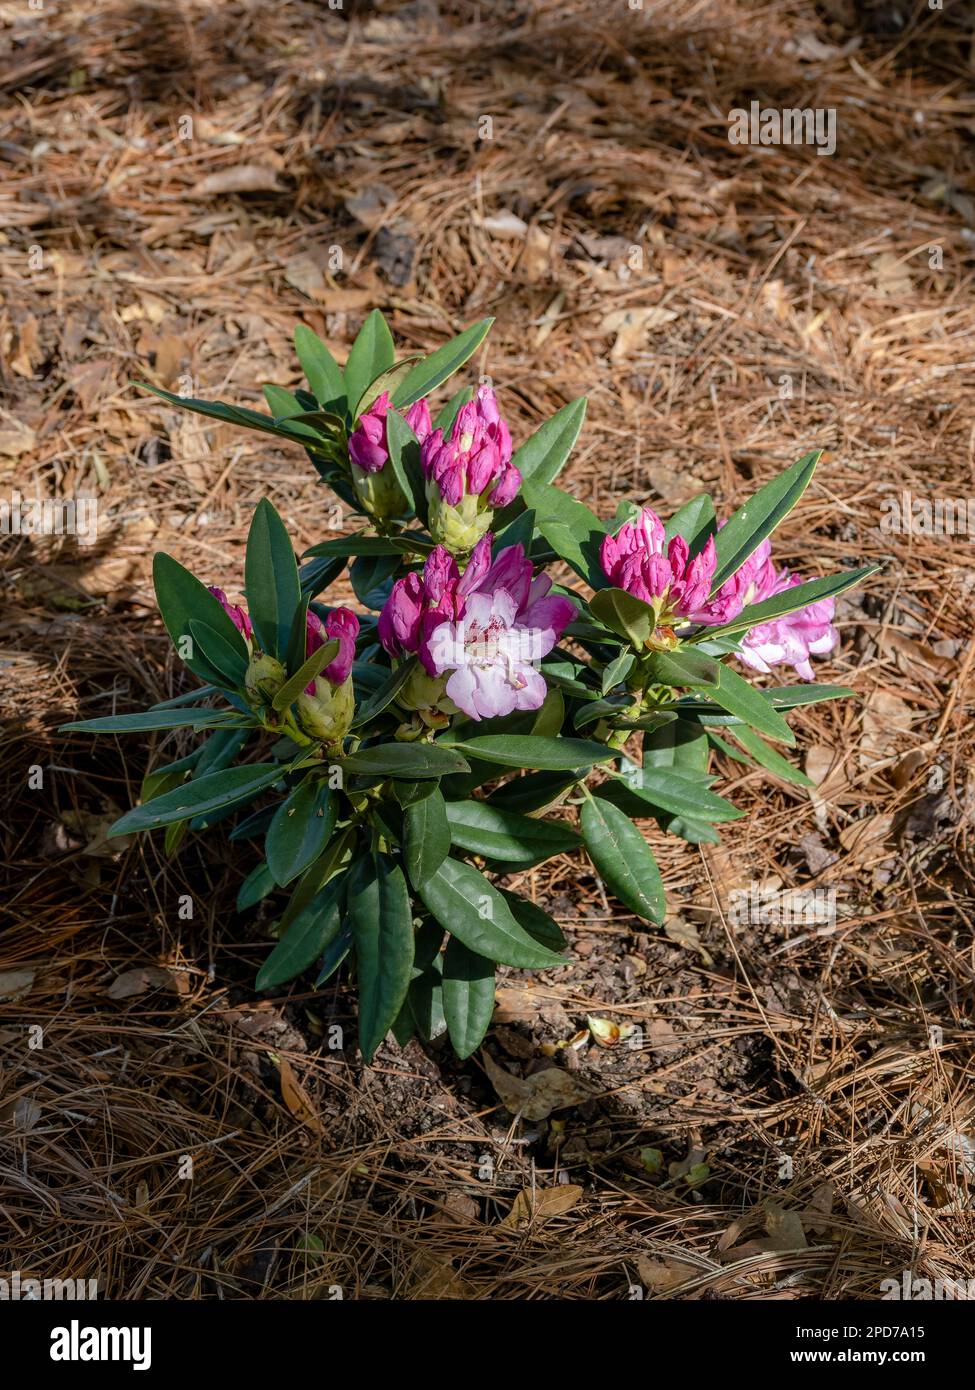 Pianta di Rhododendron di irradianza Southgate con fiori o fioriture rosa e bianchi, fioritura o fioritura in primavera in Alabama, Stati Uniti. Foto Stock